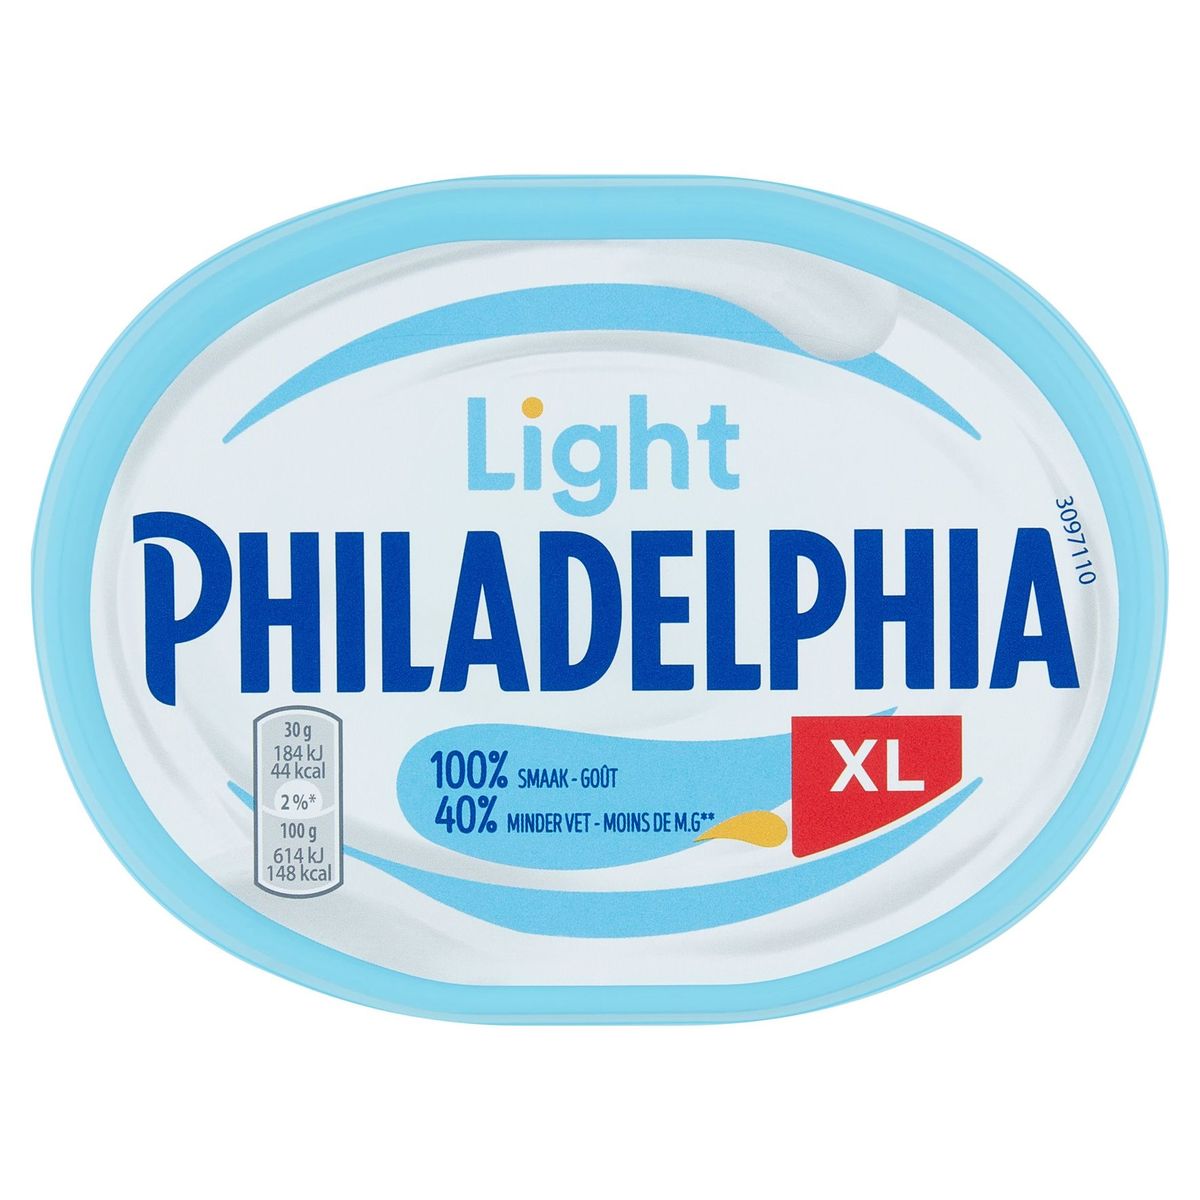 Philadelphia Smeerkaas LIGHT Original 320 g